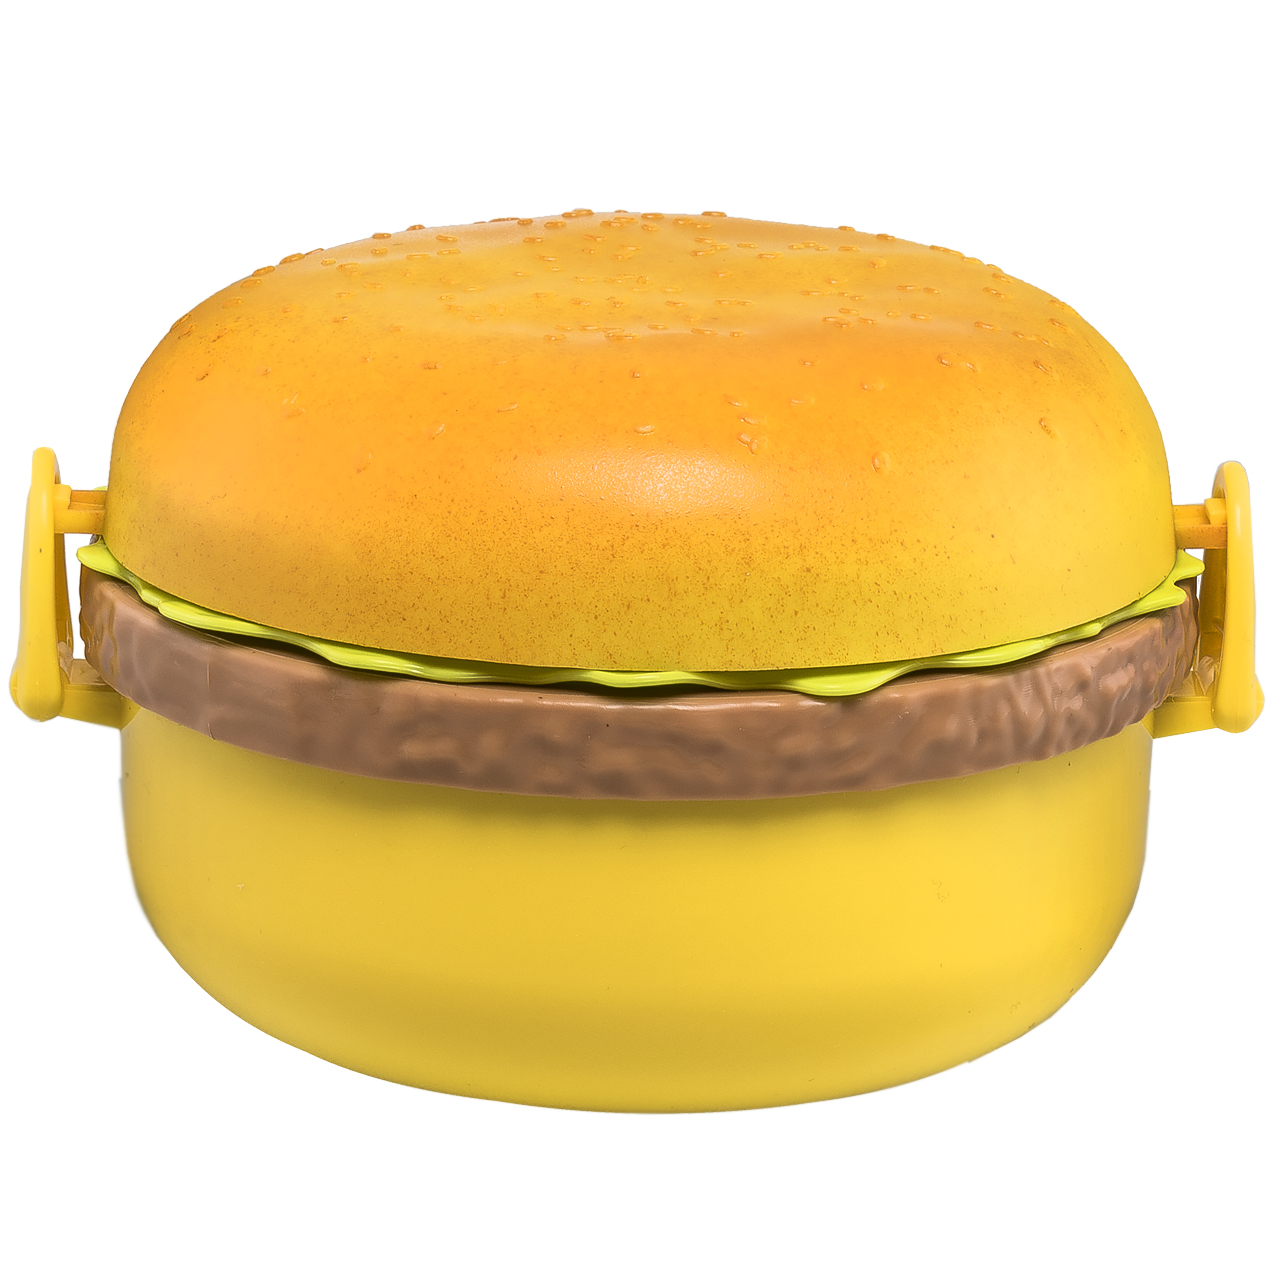 ظرف غذا تیتیز طرح همبرگر مدل 9080 درجه یک